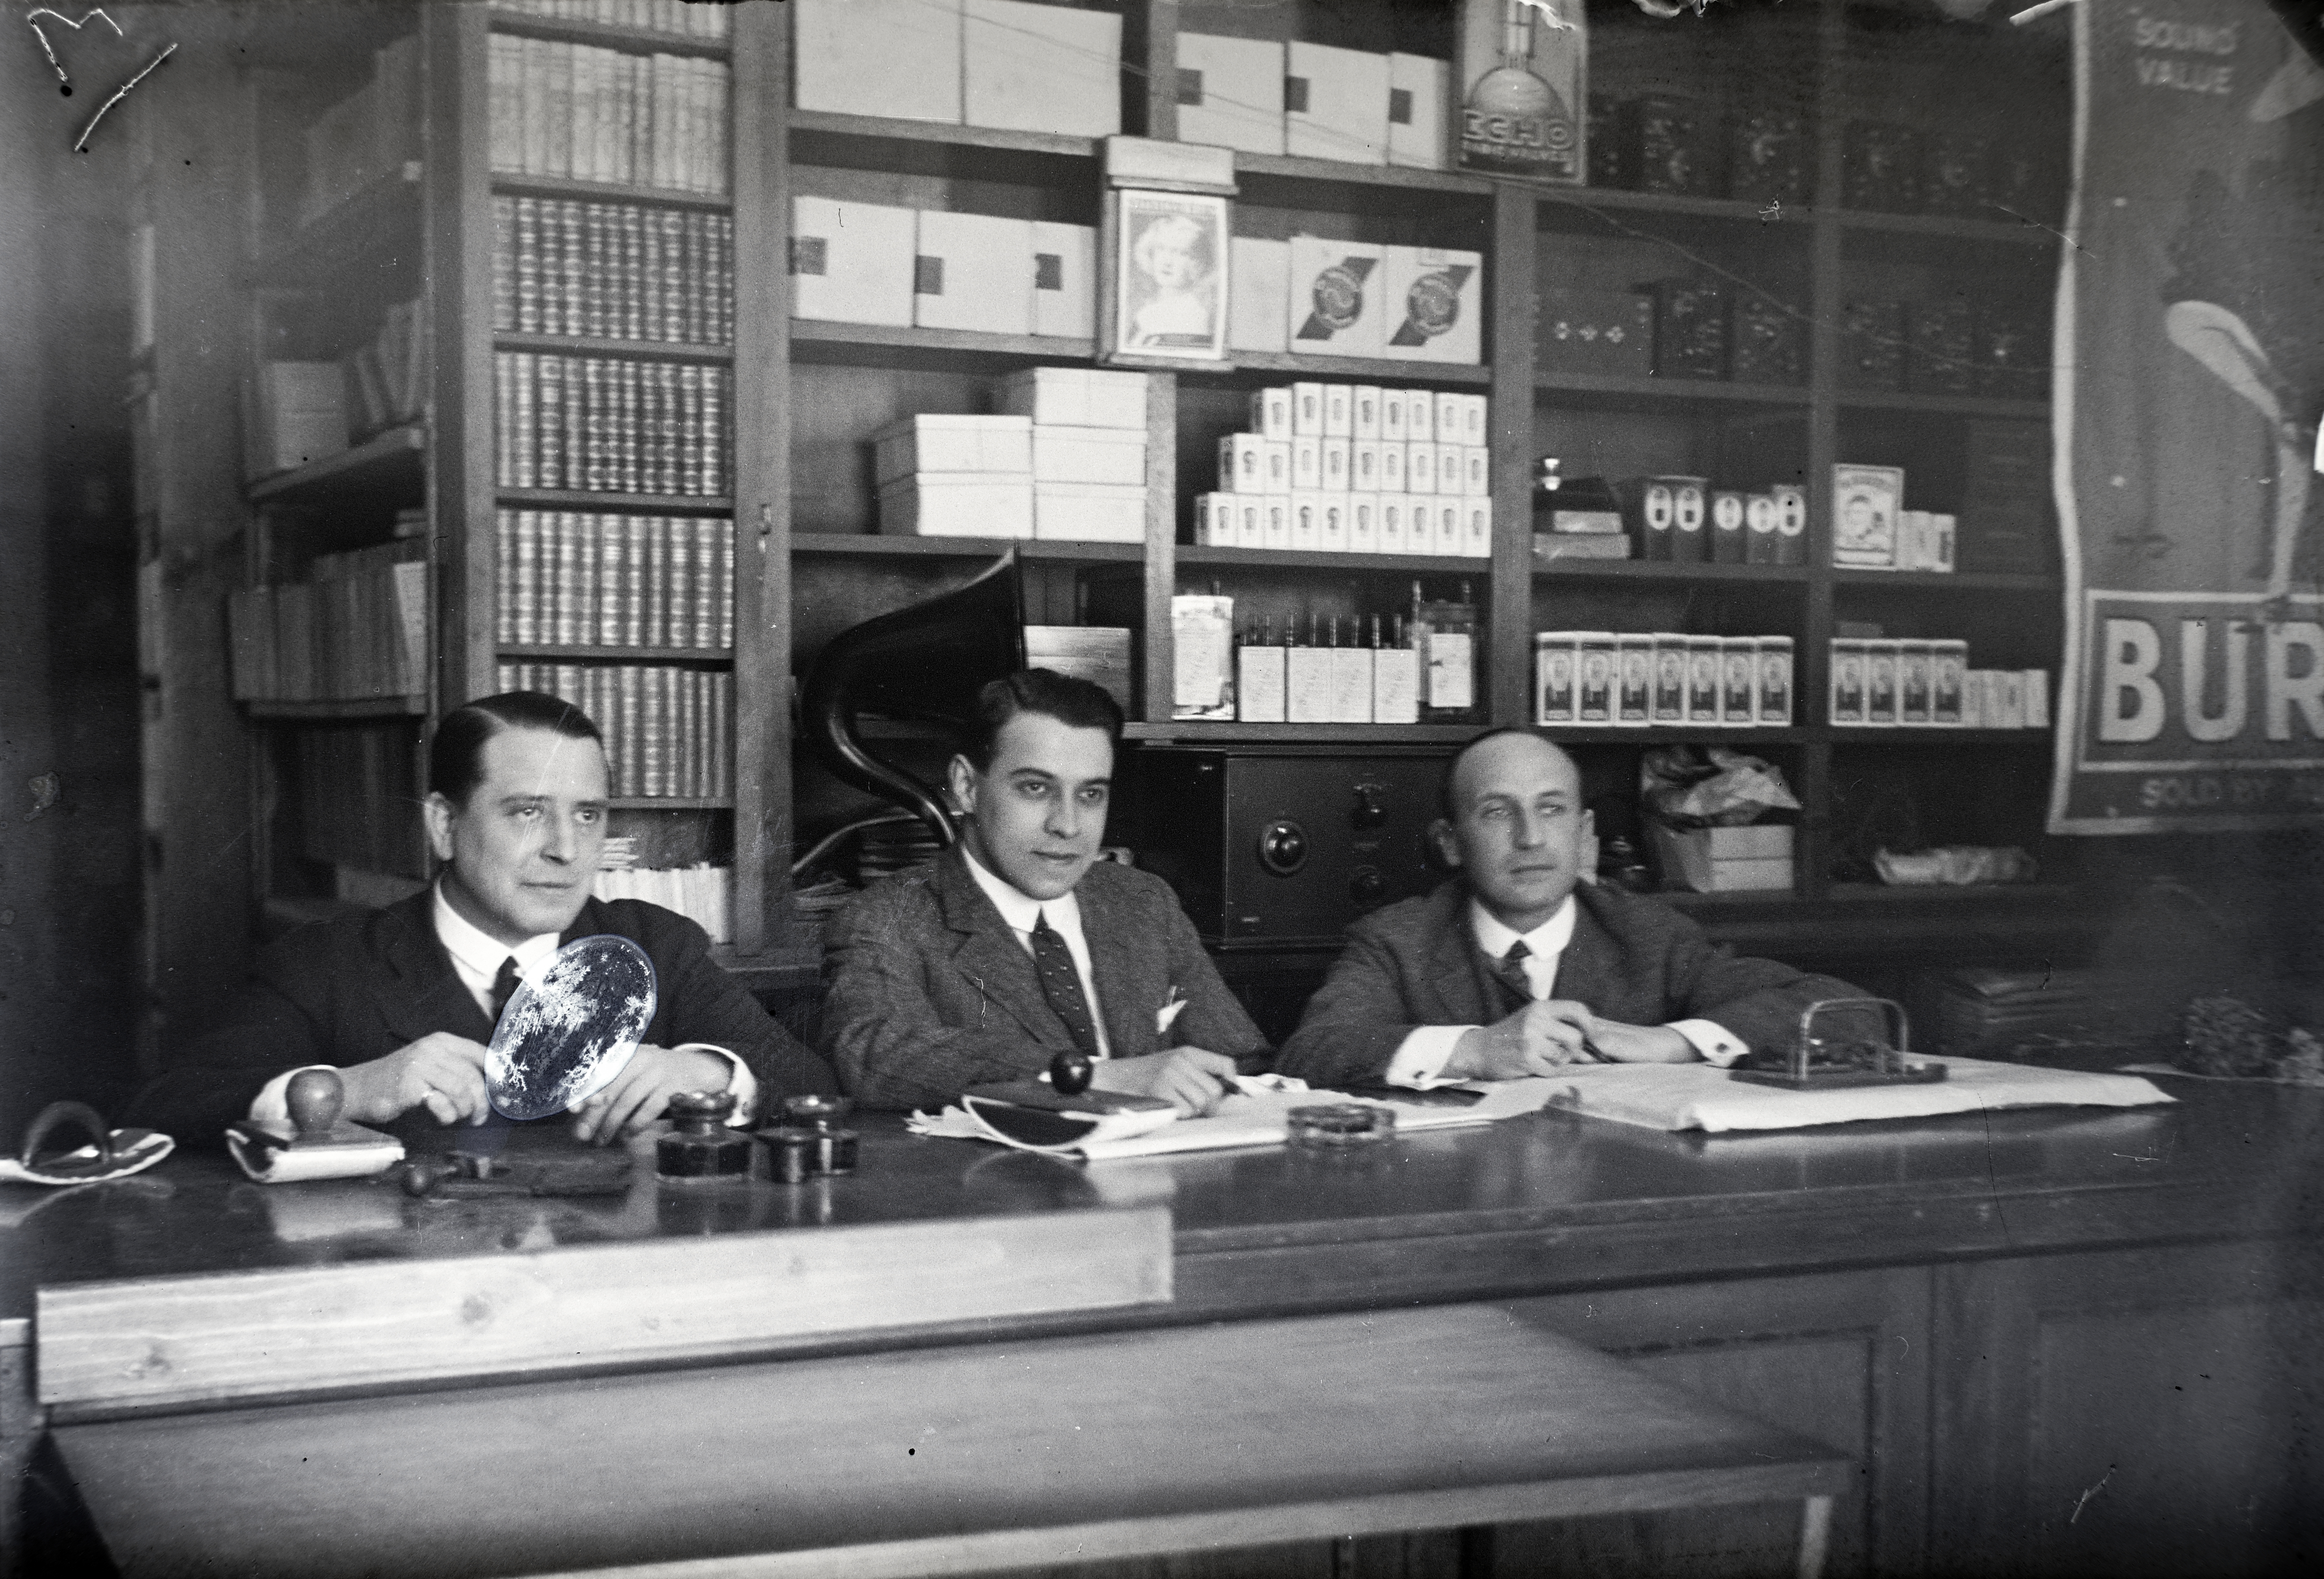 Kompóthy Gyula színművész, Szilágyi László író, a „Csókos asszony” szerzője és Sziklay József színművész autogramot adnak a Színházi Élet hetilap budapesti boltjában 1926-ban.